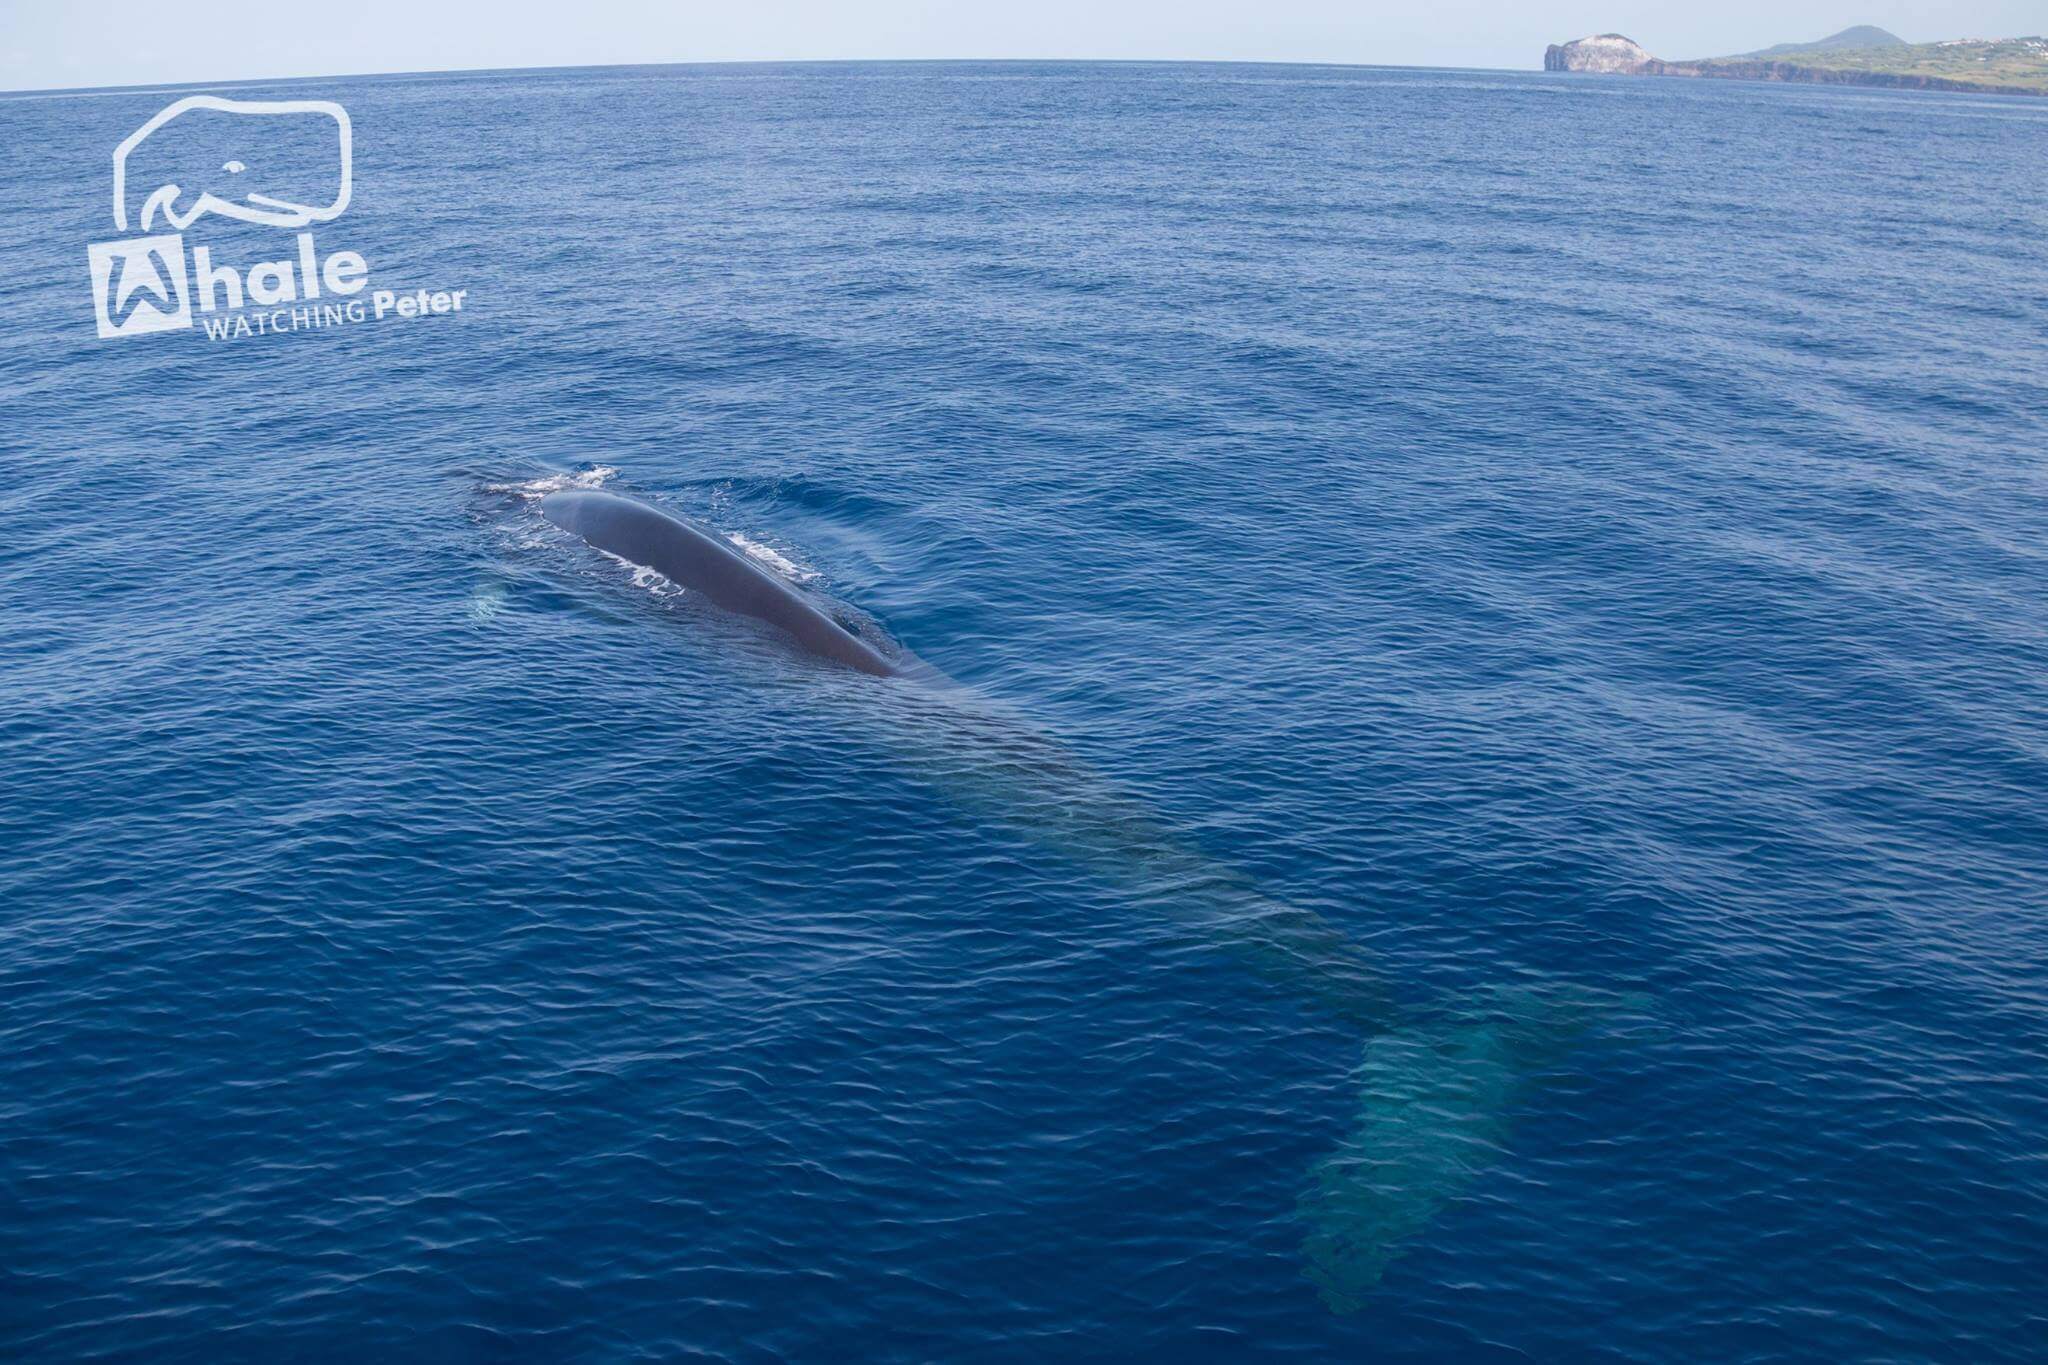  Fotografia de golfinhos e baleias durante a atividade de whale watching com o peter cafe sport 